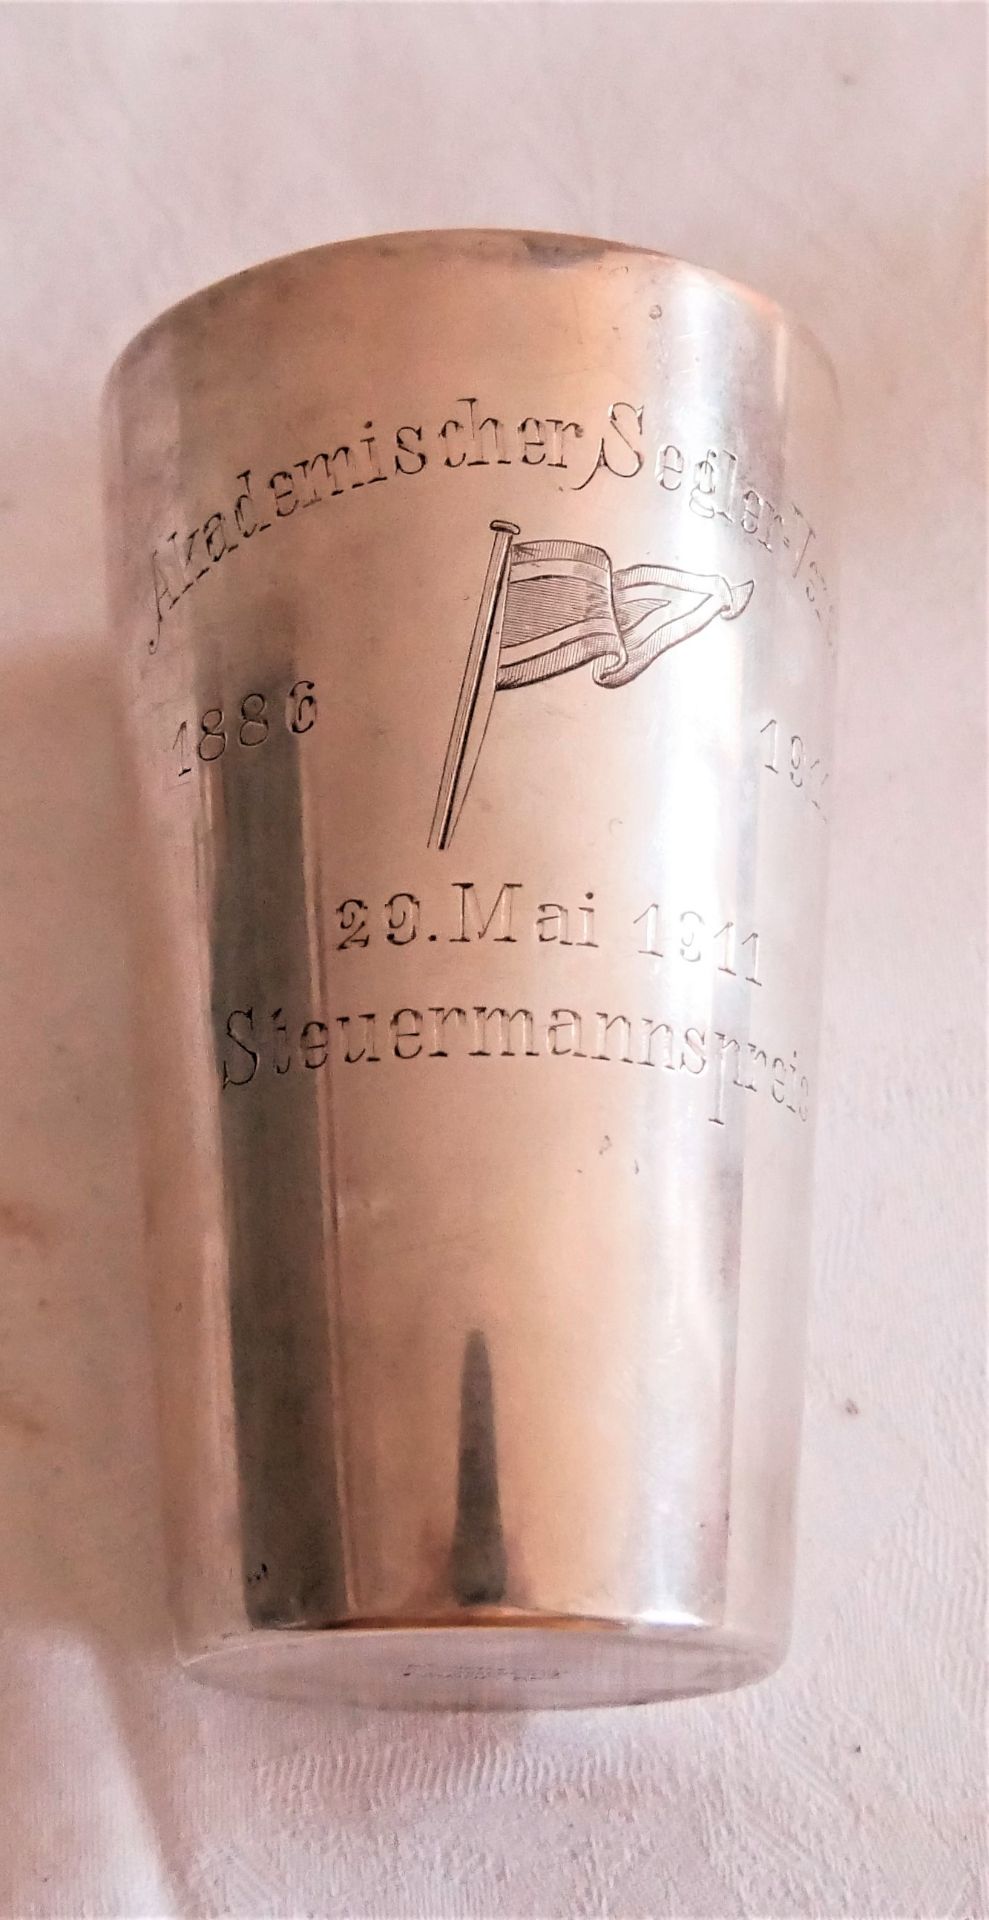 Silber - Preispokalbecher, Gravur Akademischer Segler Verein 1886-1911, 22. Mai 1911. - Image 3 of 3